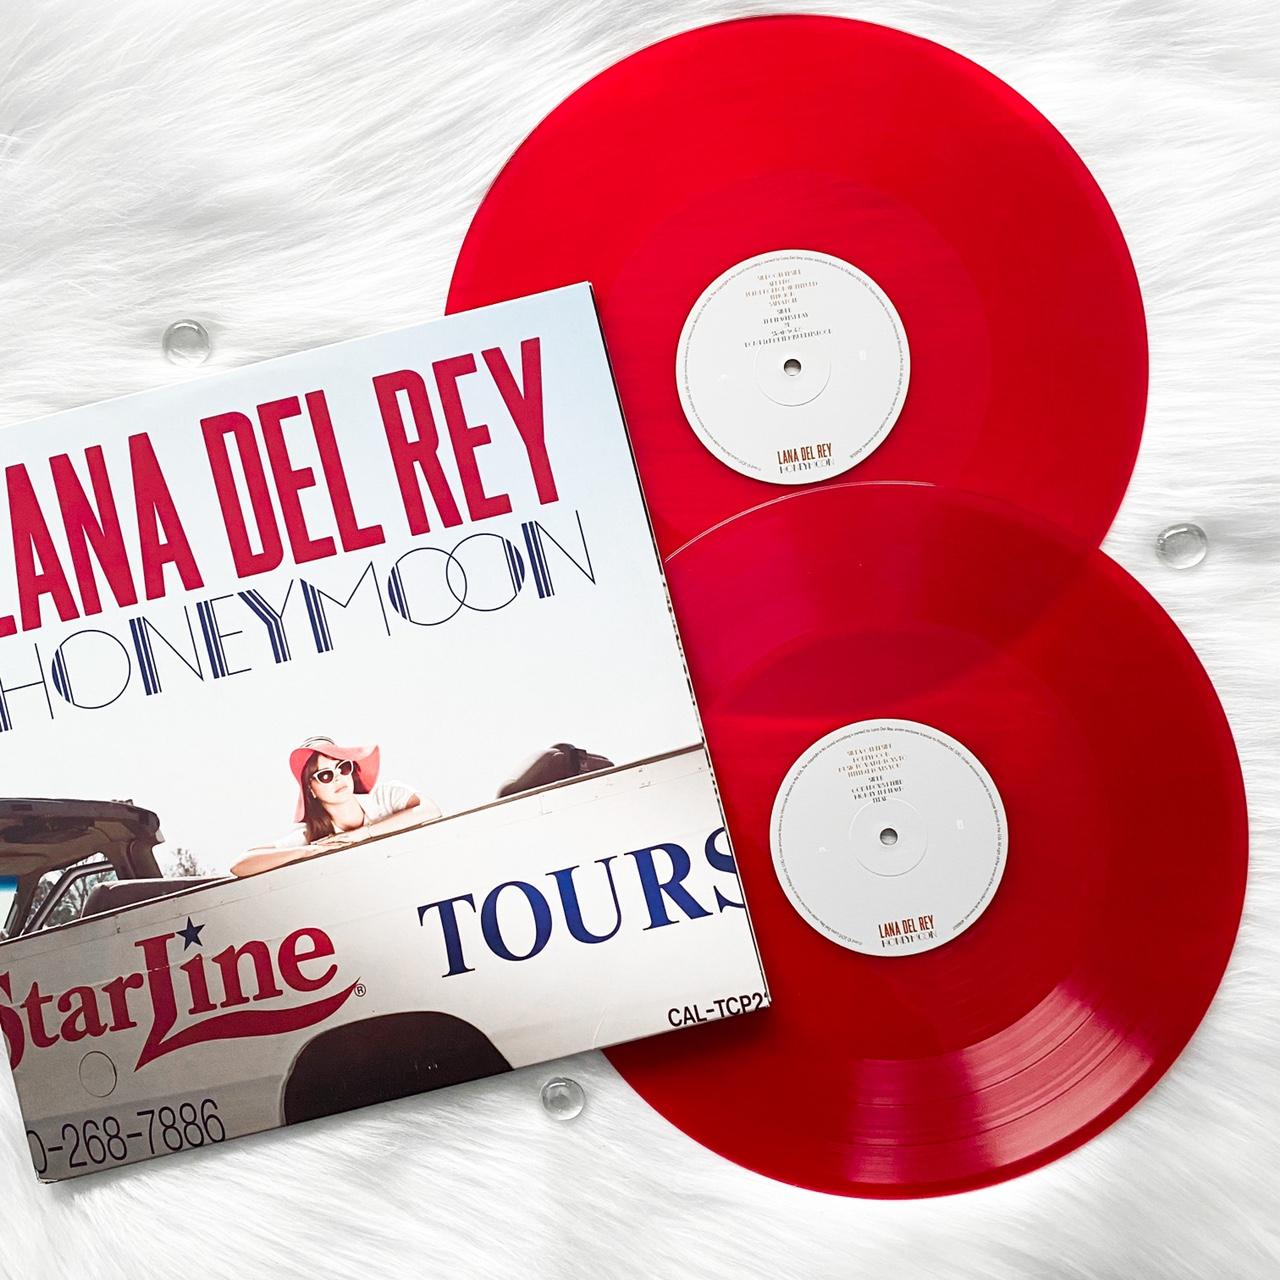 Lana del Rey - Honeymoon red vinyl